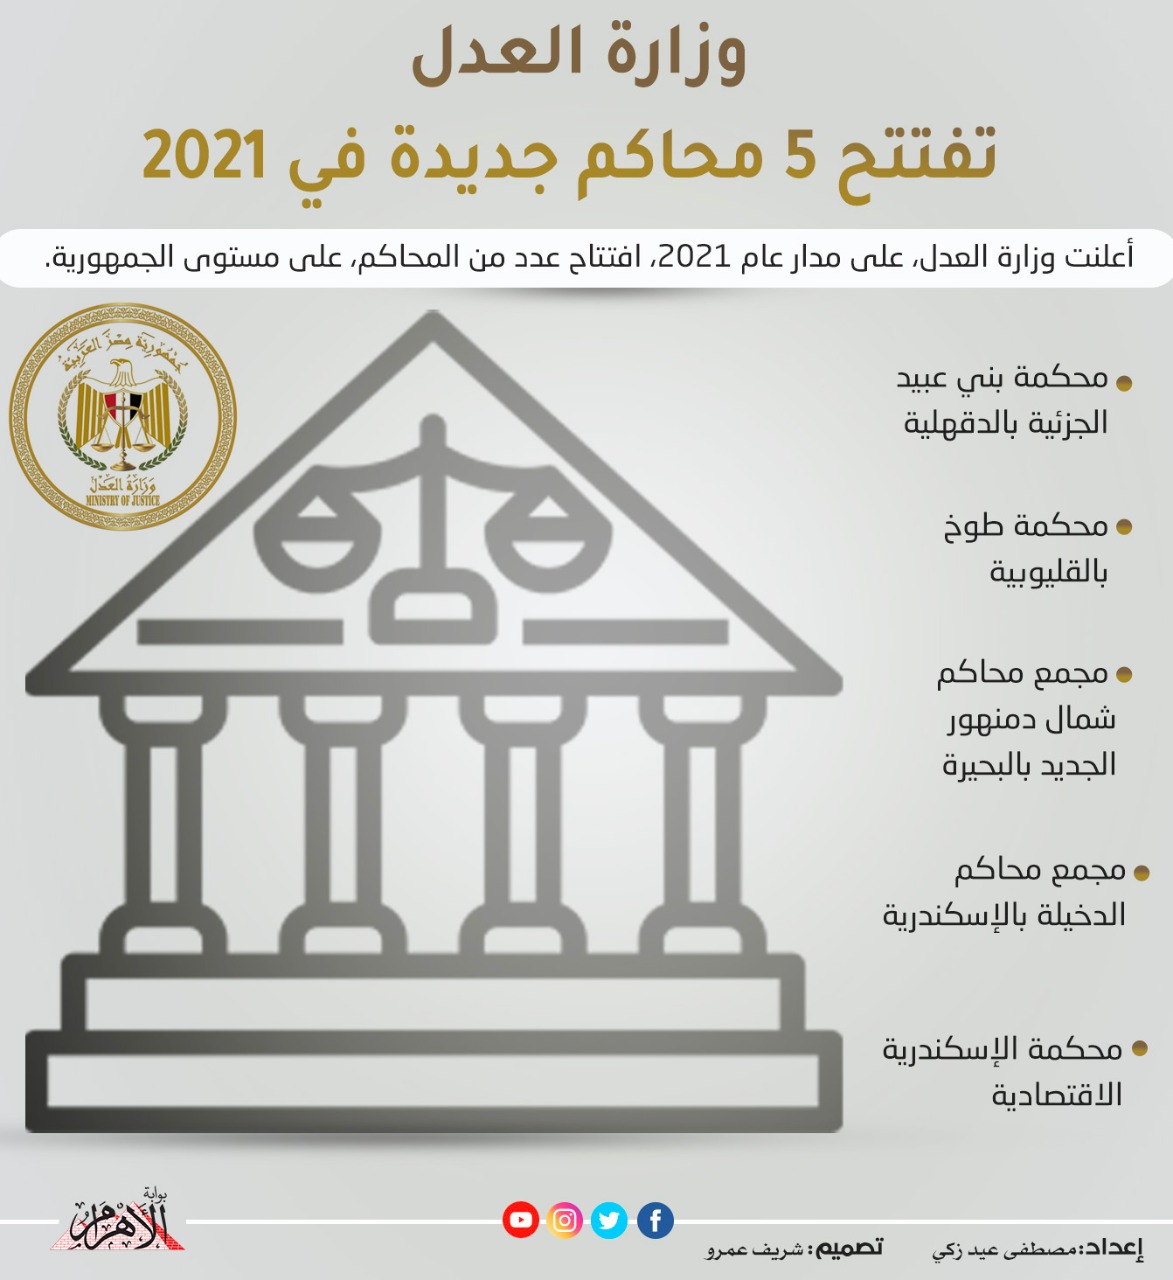 وزارة العدل تفتتح 5 محاكم جديدة في 2021 | إنفوجراف - بوابة الأهرام